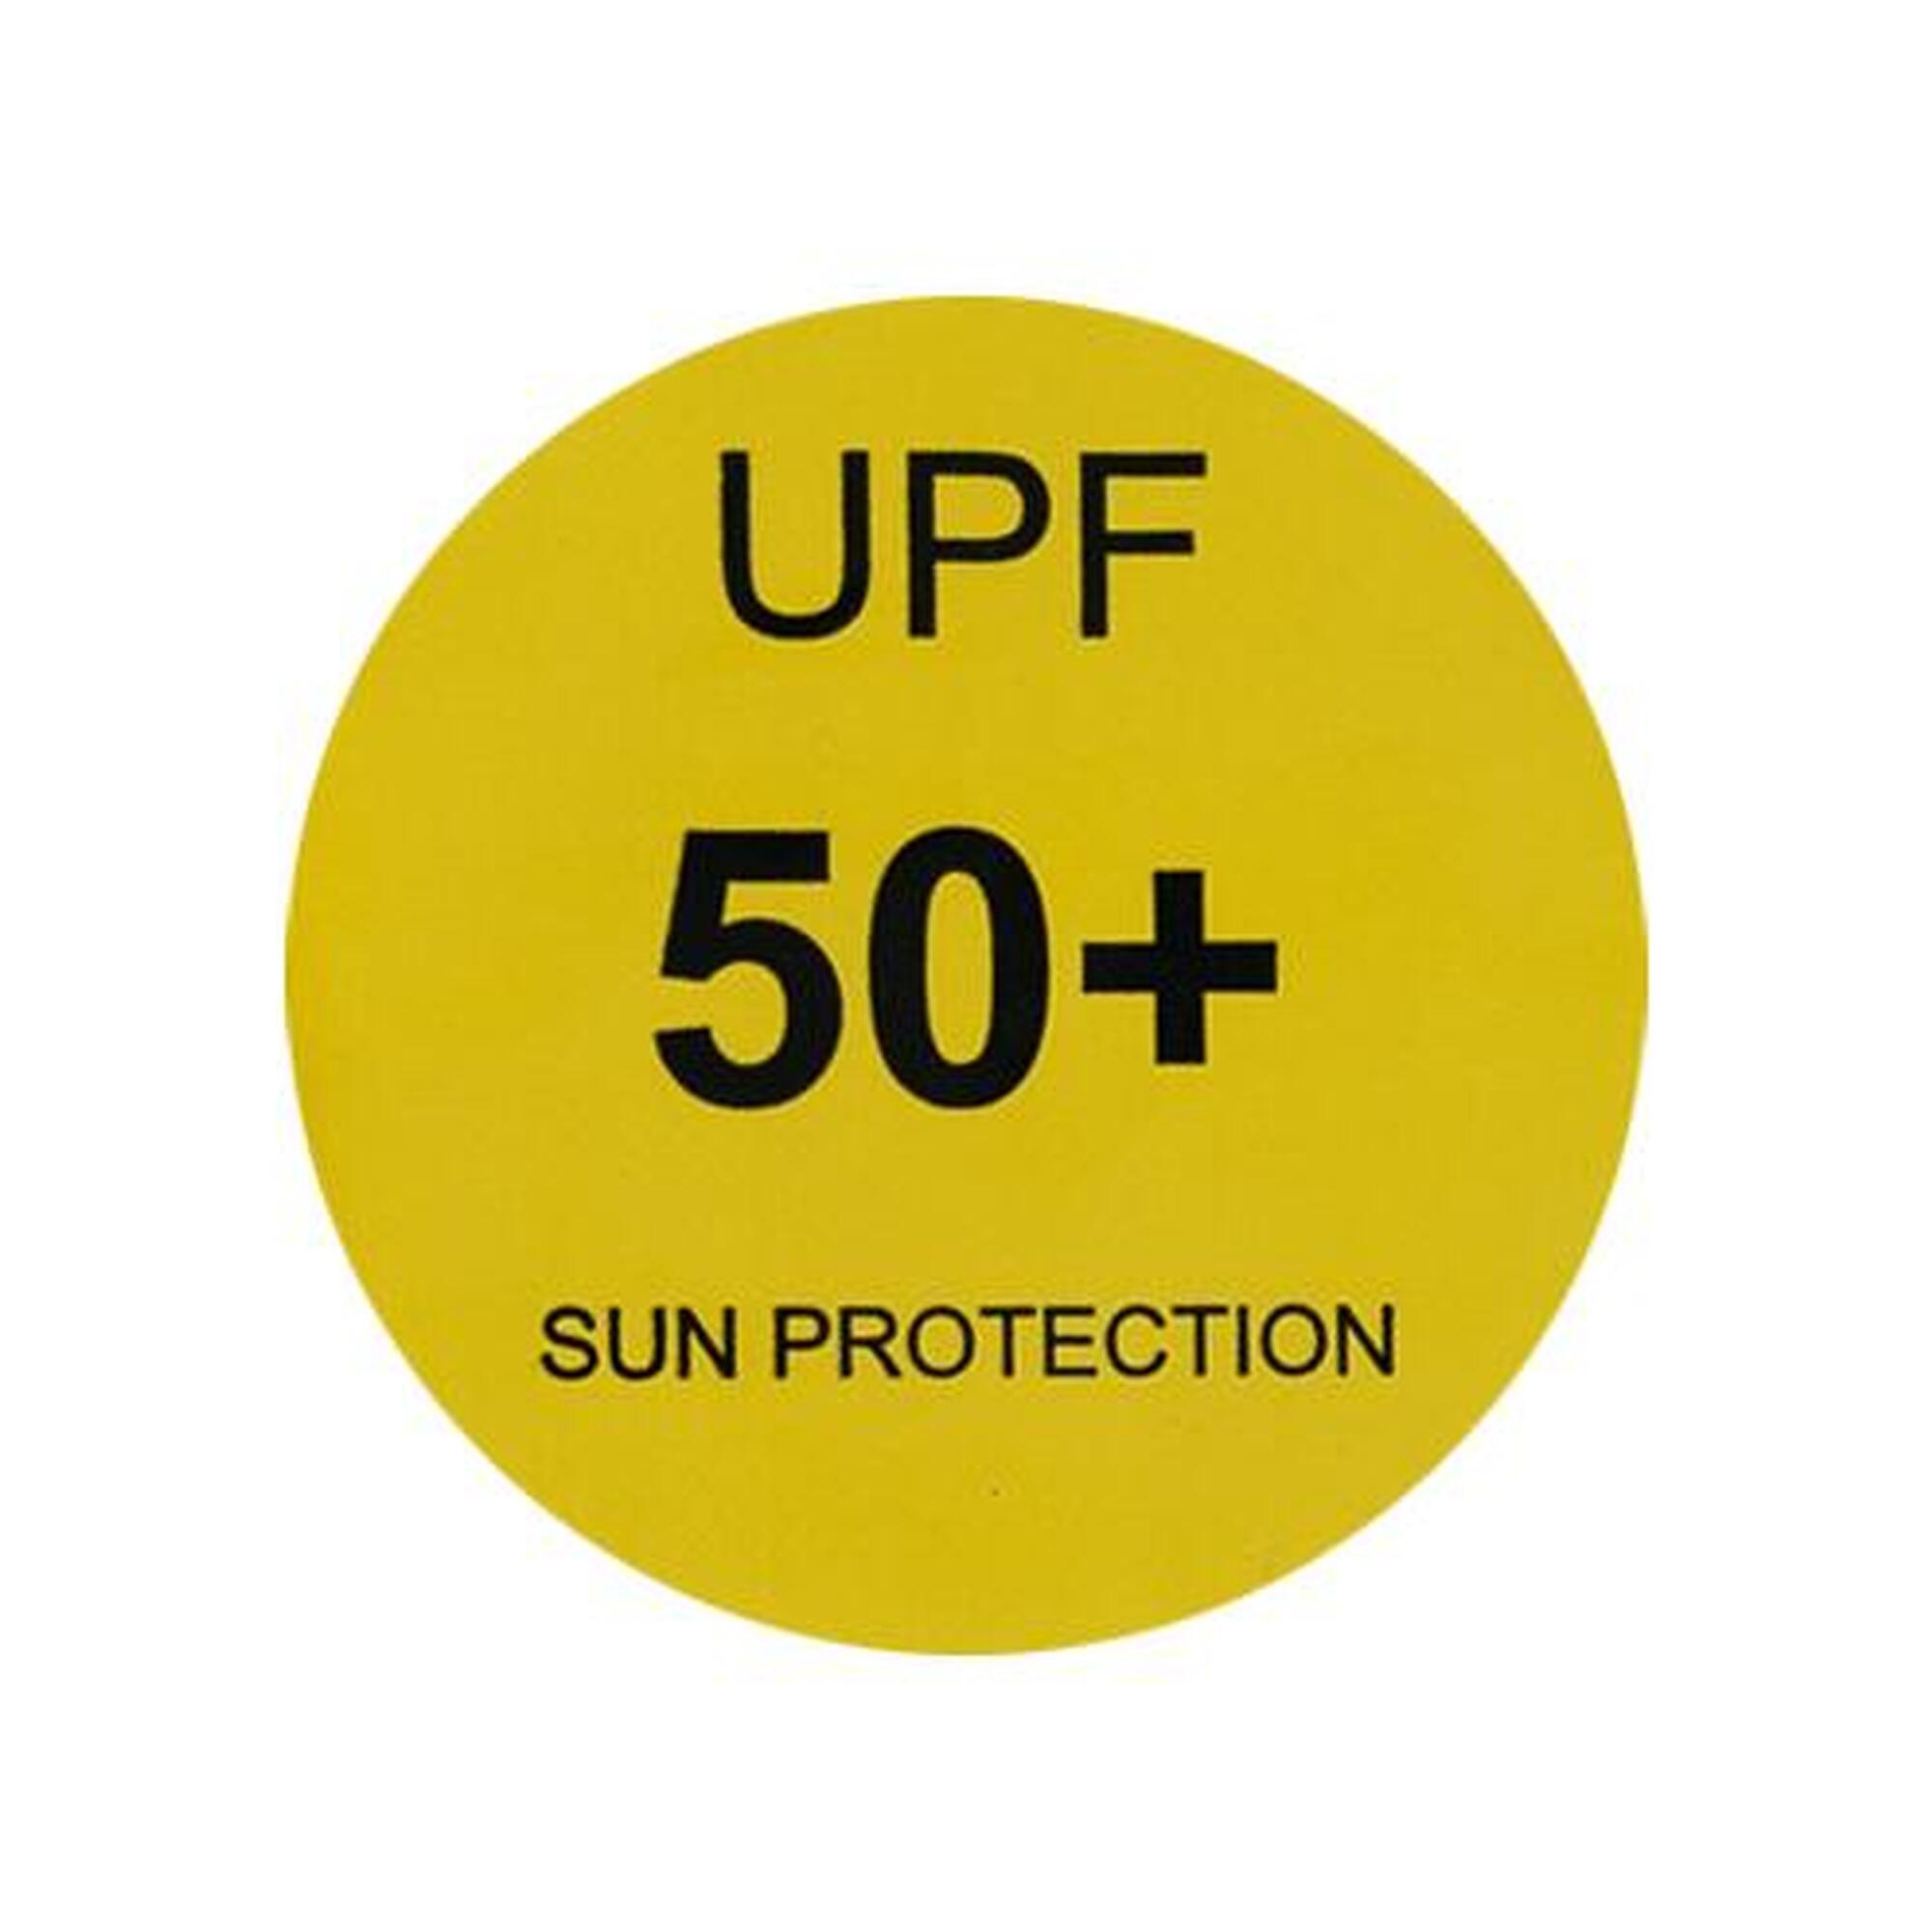 Monaco - colete salva-vidas UV-resistente para crianças em neoprene/lycra.